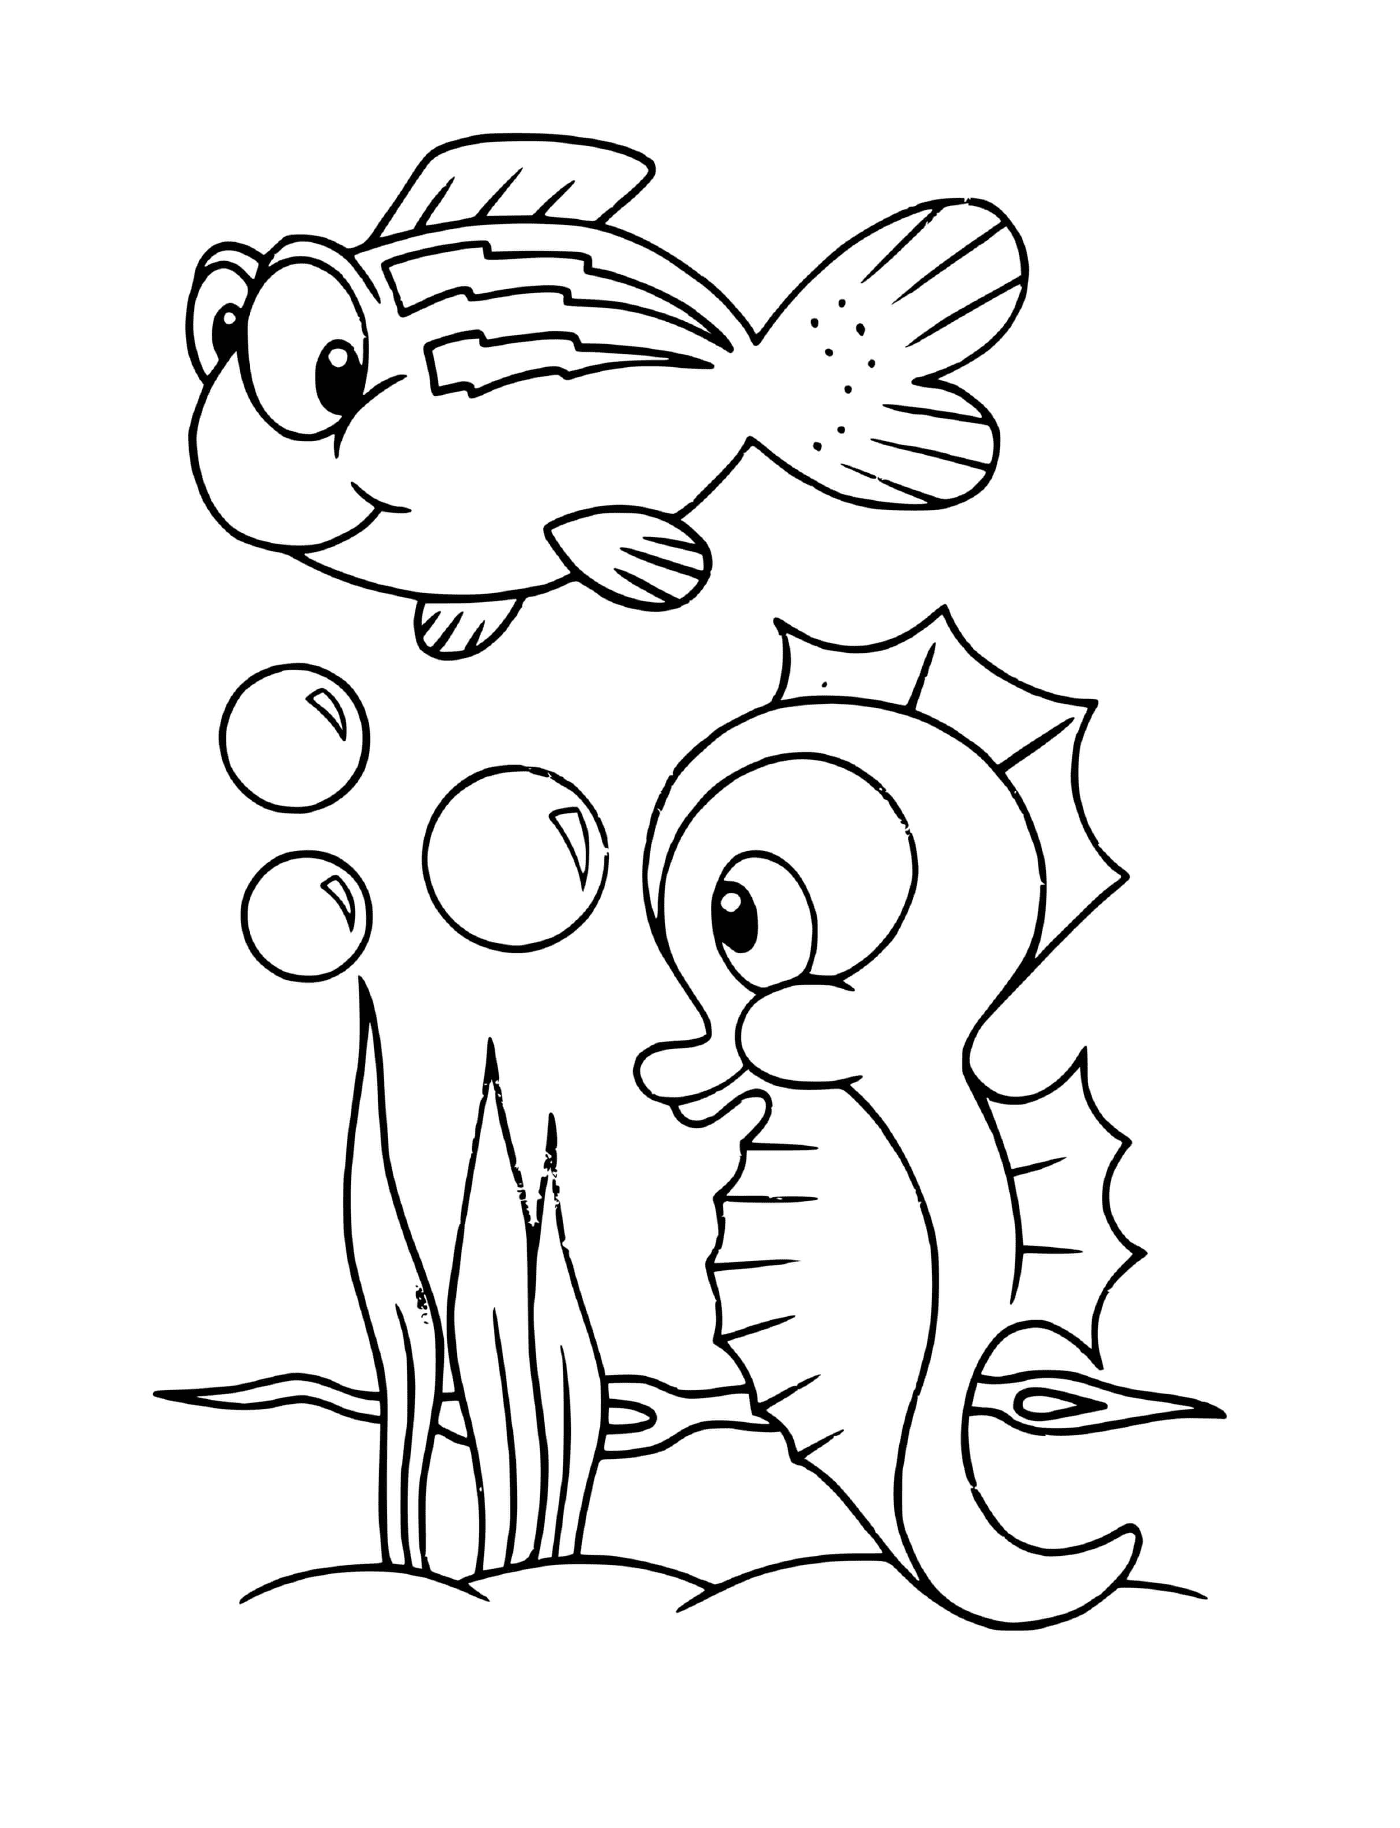  ein Fisch und eine Seepferdchenschildkröte 